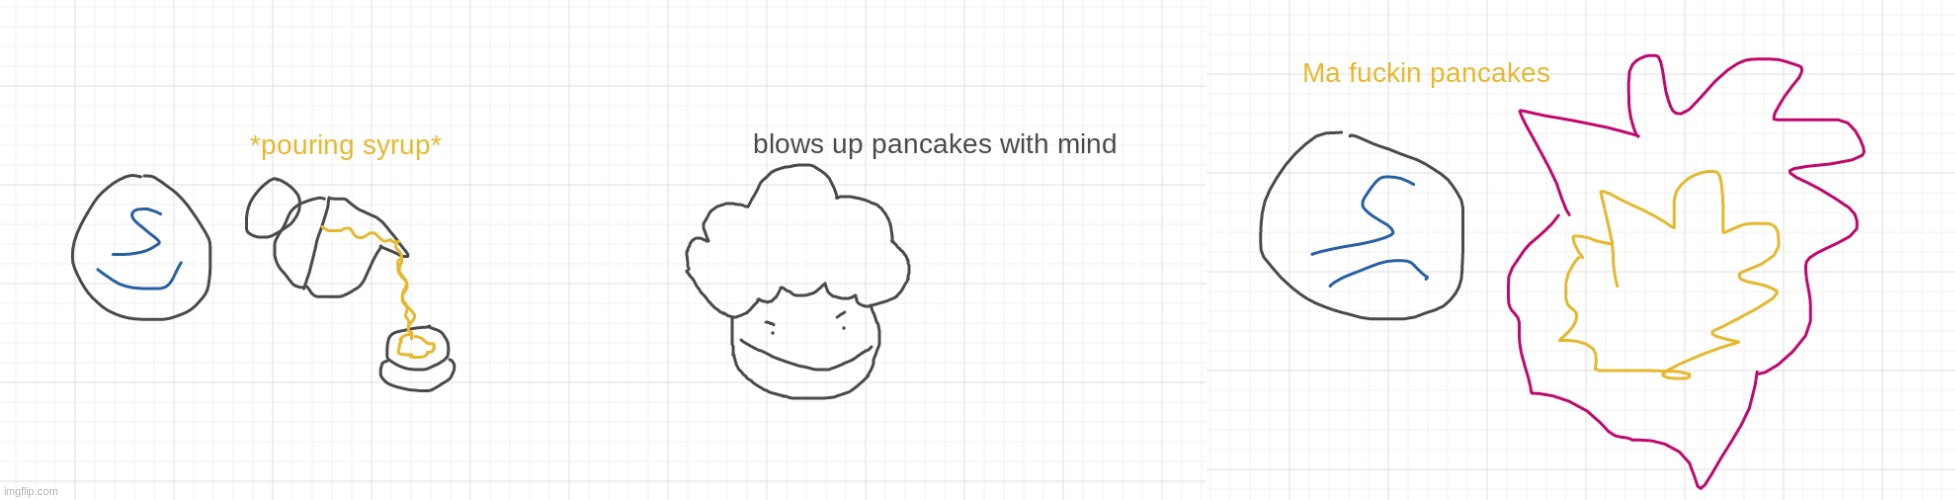 bush-head blows up shady's pancakes | image tagged in bush-head blows up shady's pancakes | made w/ Imgflip meme maker